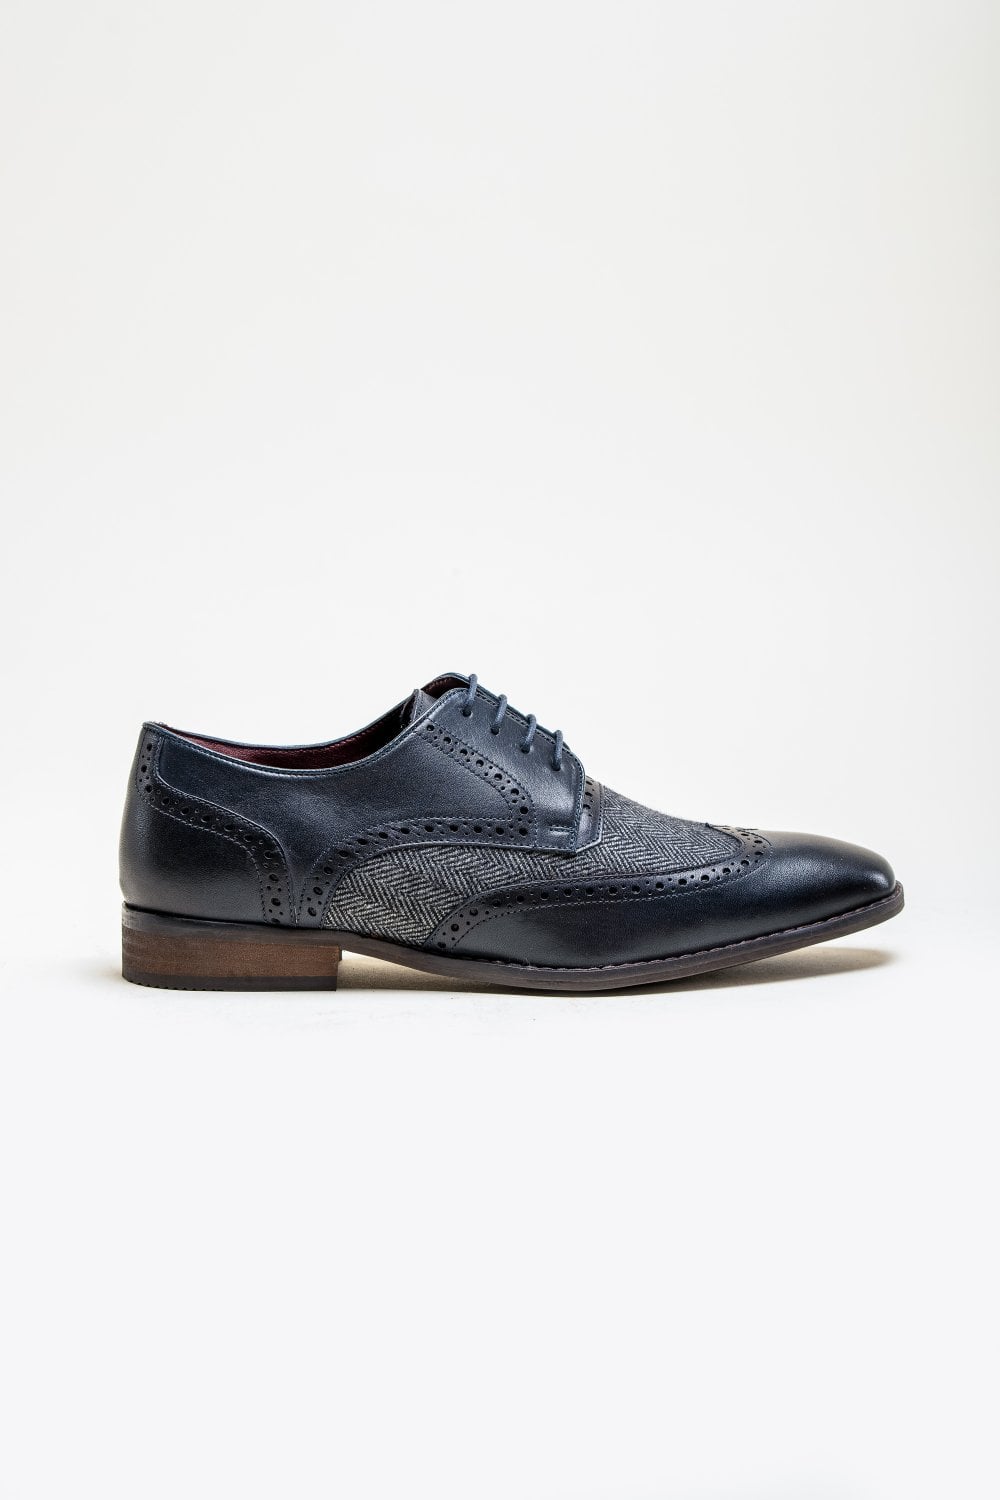 Cavani Faro Tweed Schuhe - Navy - schoenen